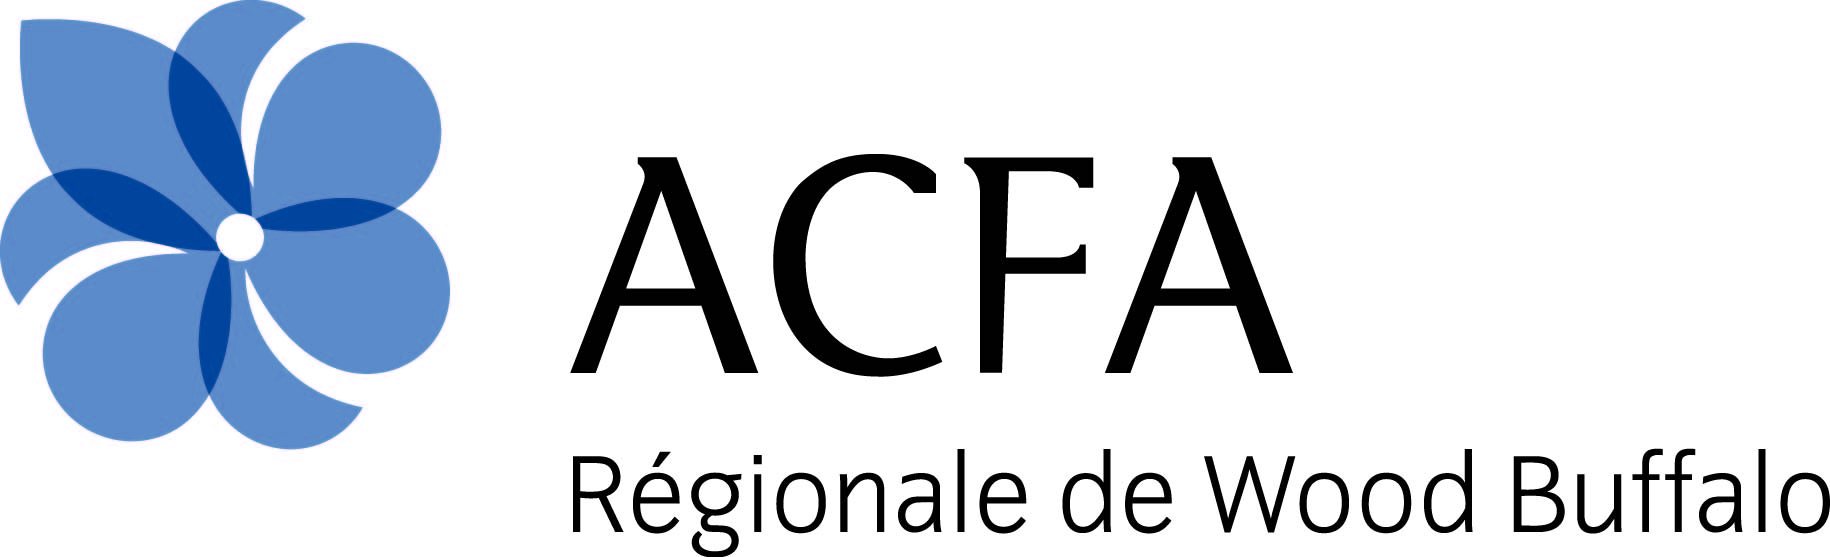 ACFA regionale de Wood Buffalo (small)